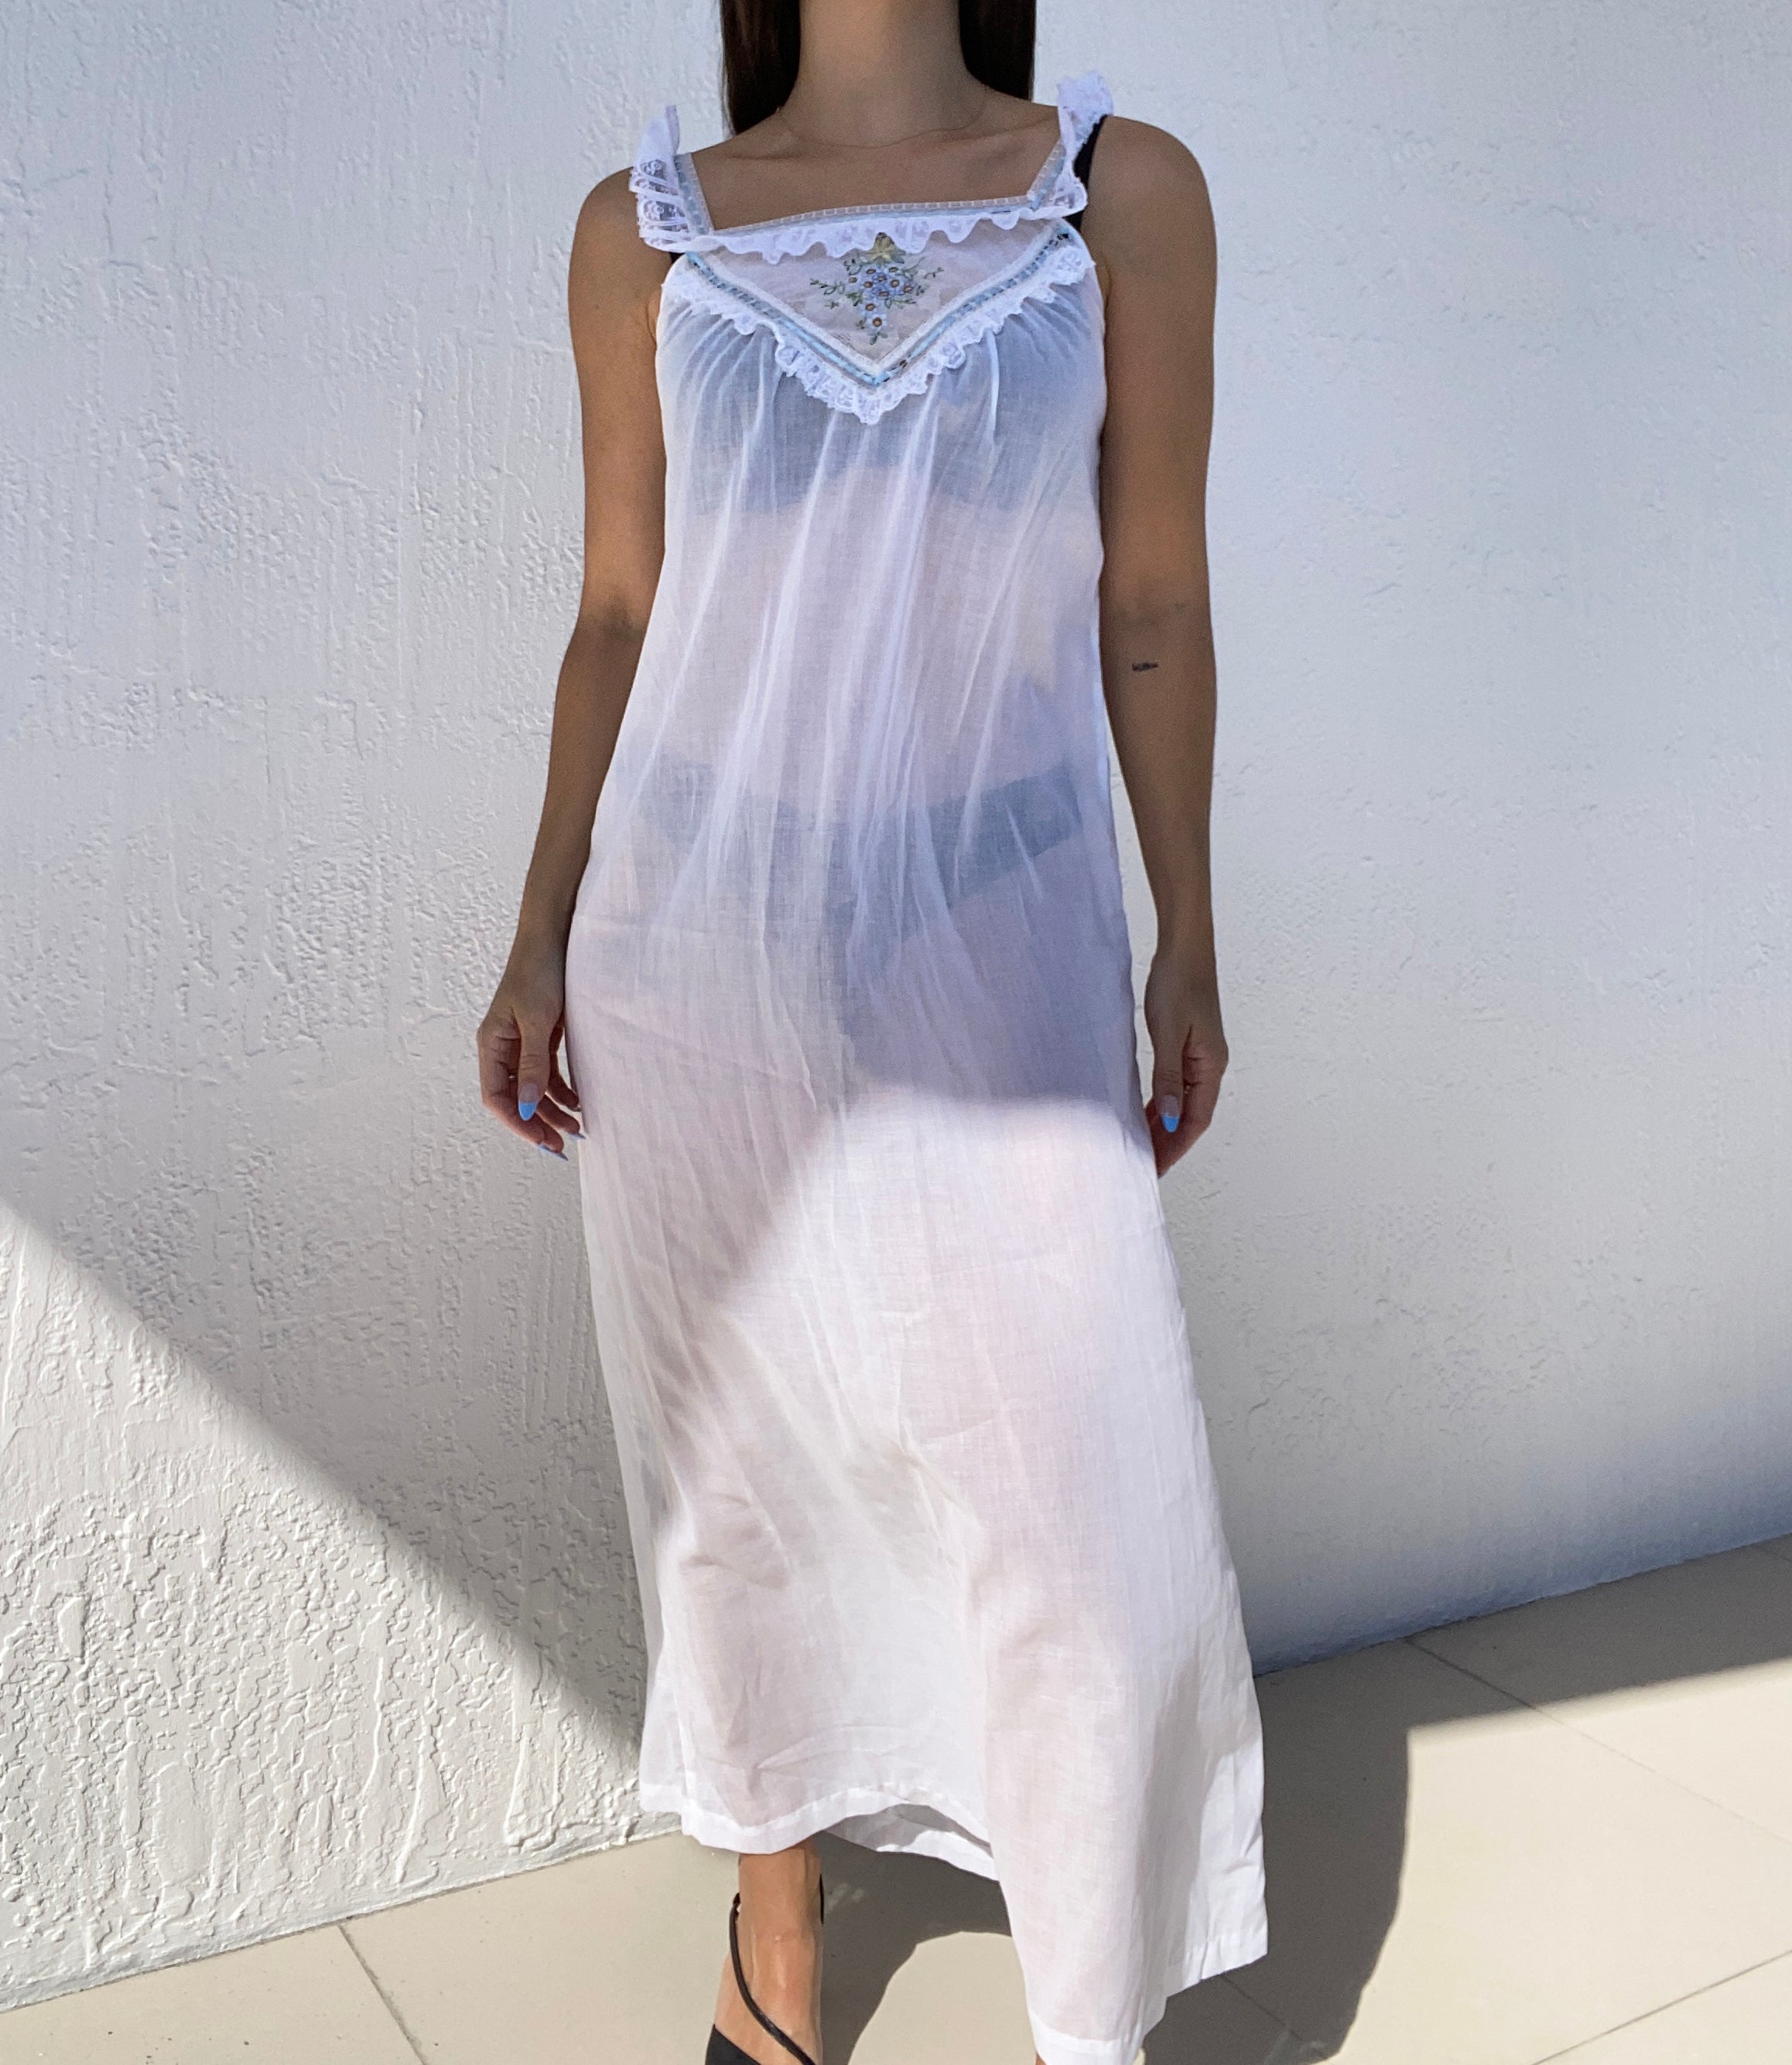 Bert Yelin for Iris Sheer Embroidered Slip Dress